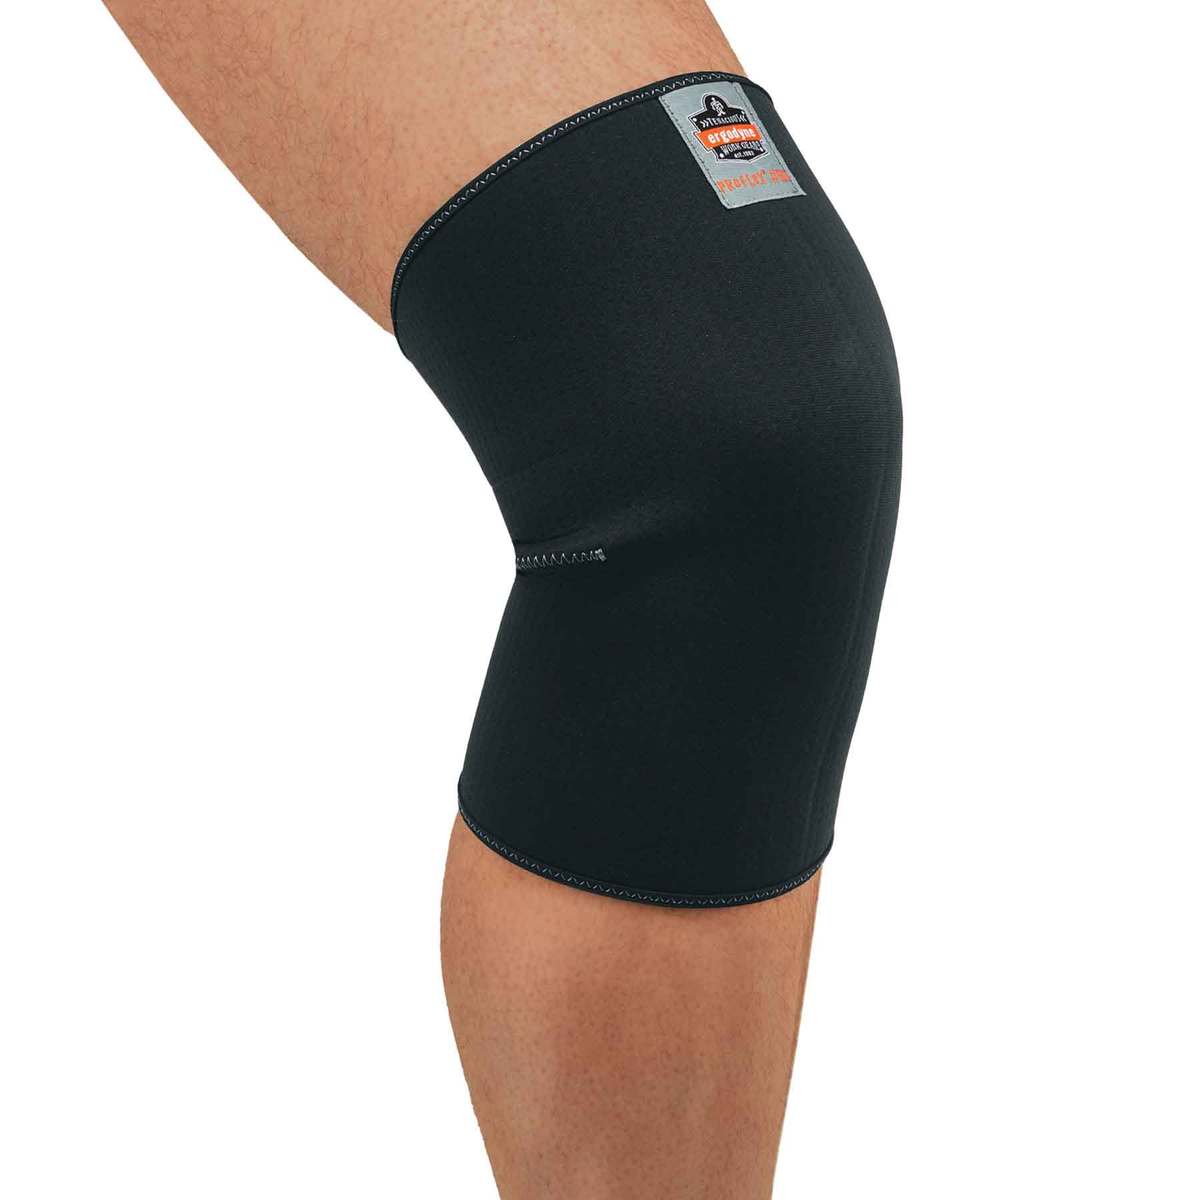 Ergodyne Large Black ProFlex® 600 Single-Layer Neoprene Knee Sleeve